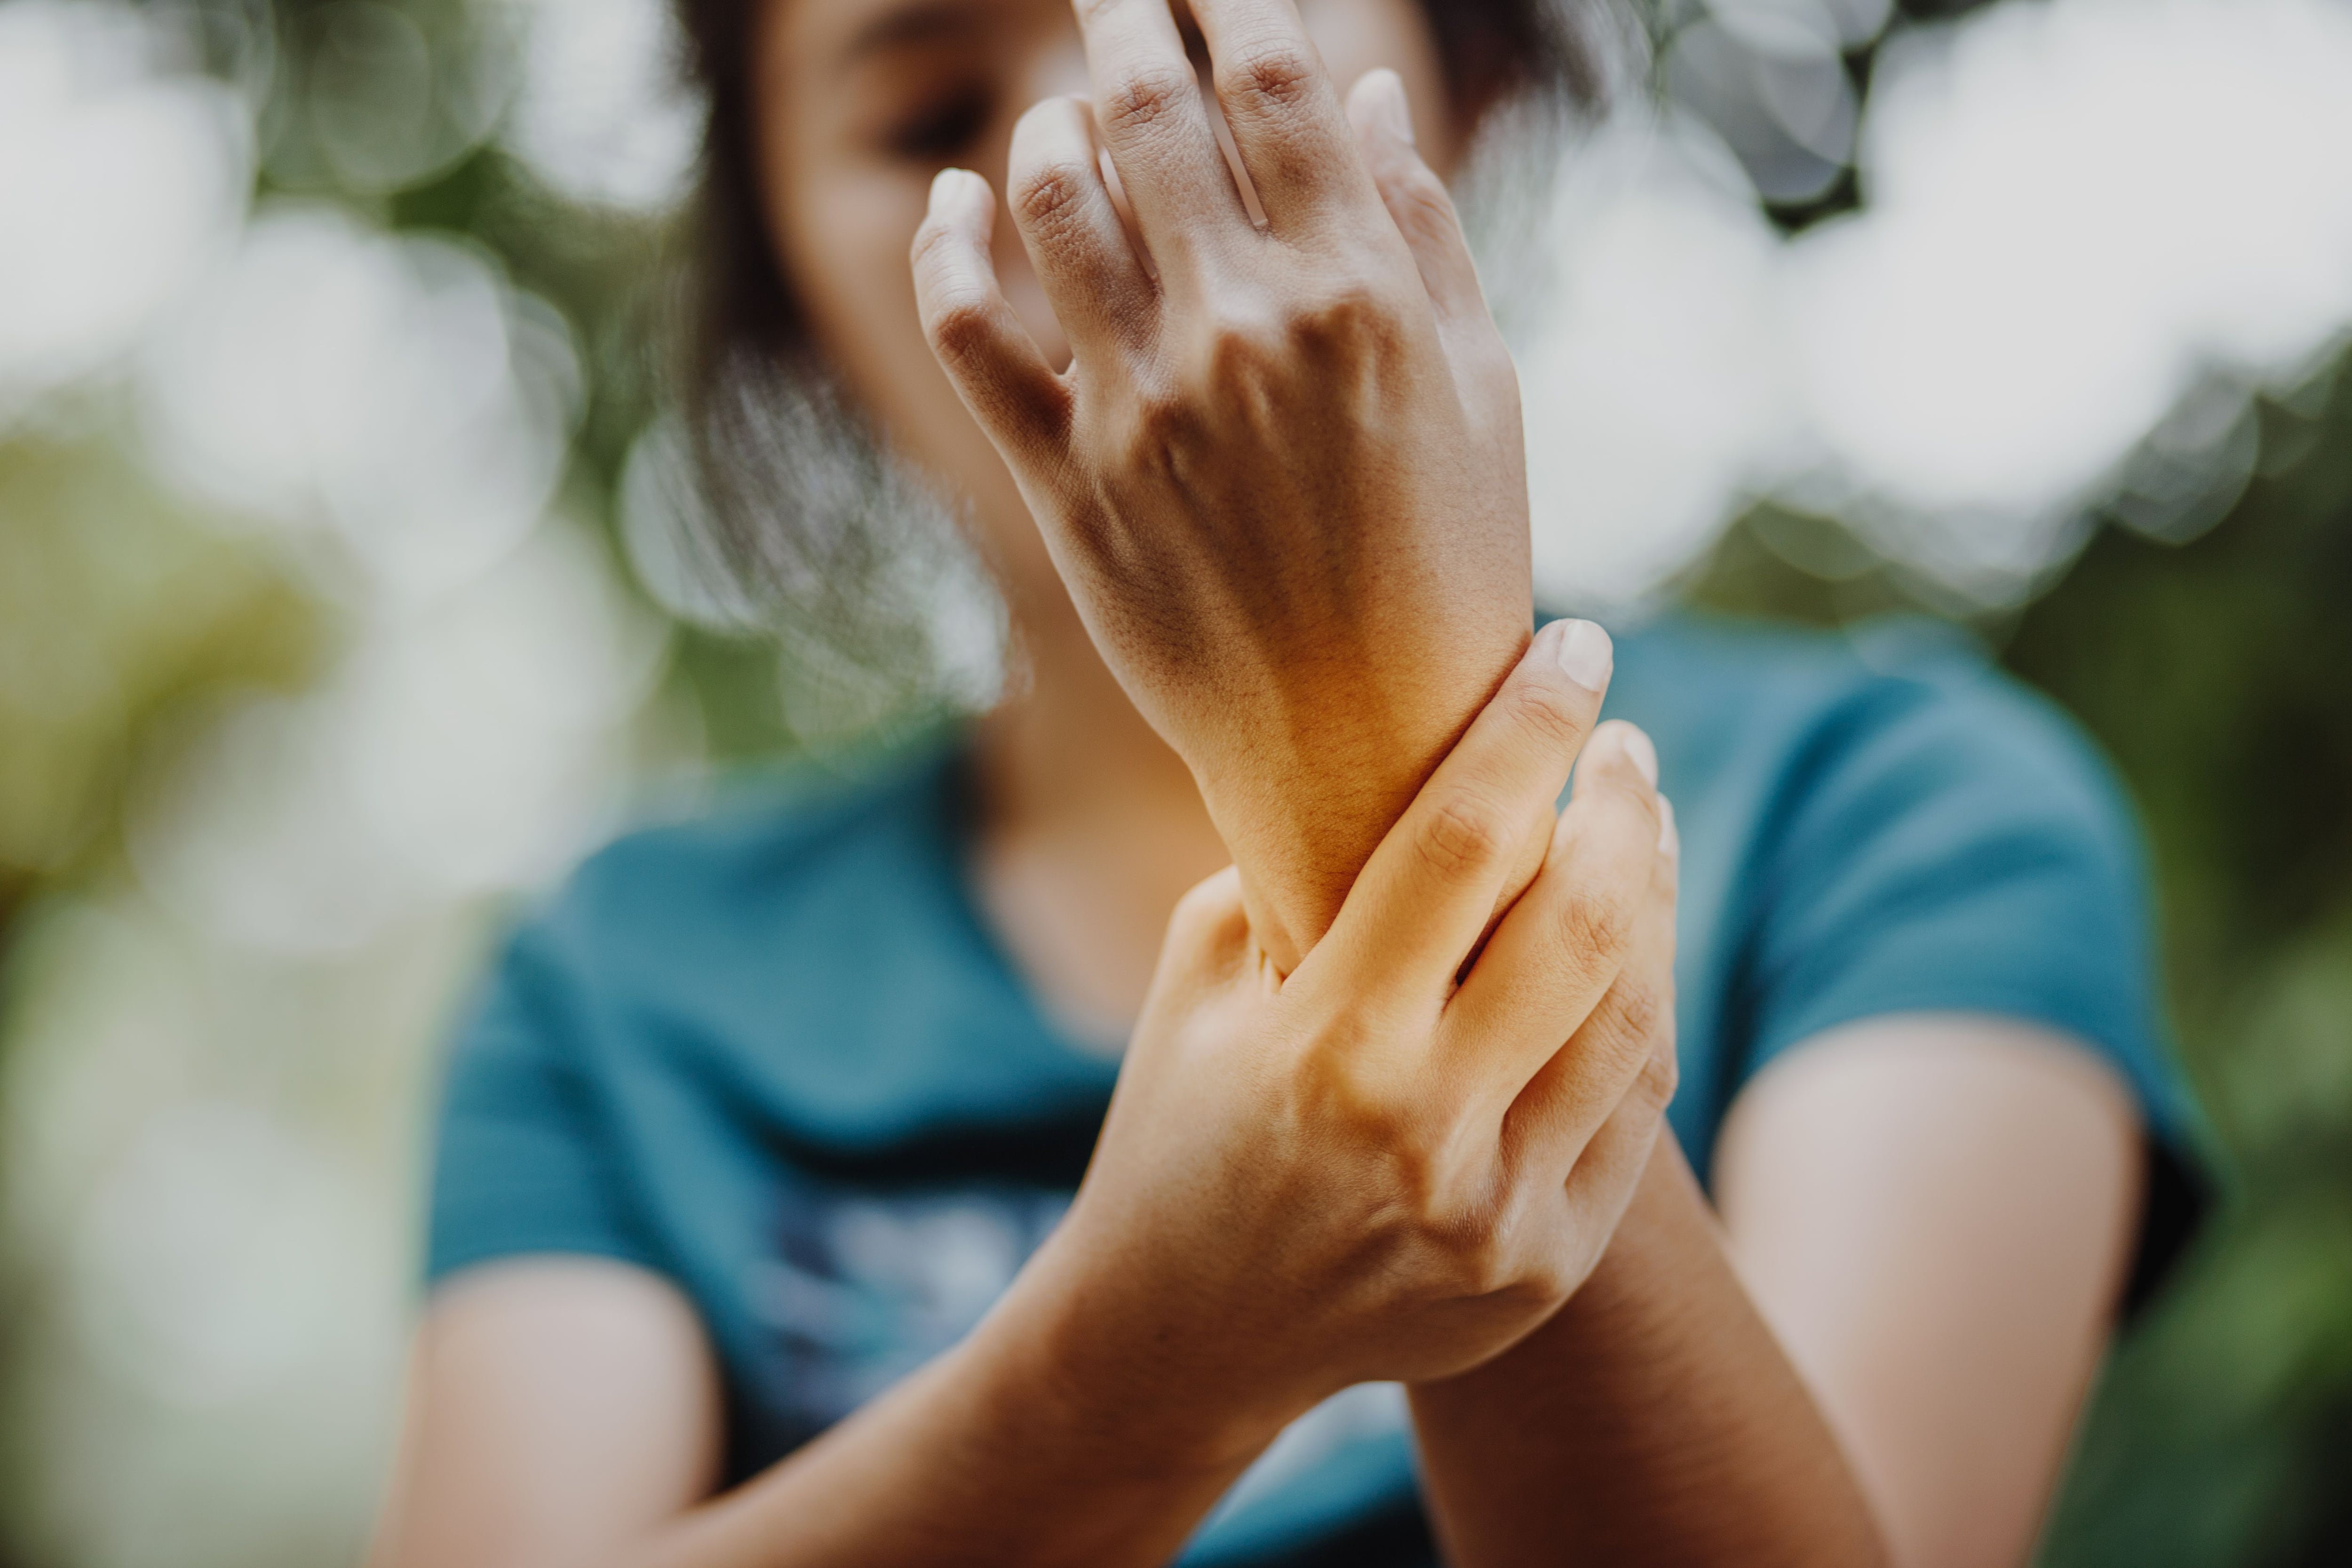 Los dolores crónicos se ven en aproximadamente 50.000 costarricenses, según la CCSS. Dolores en las muñecas por artritis son un ejemplo.

Fotografía: Shutterstock